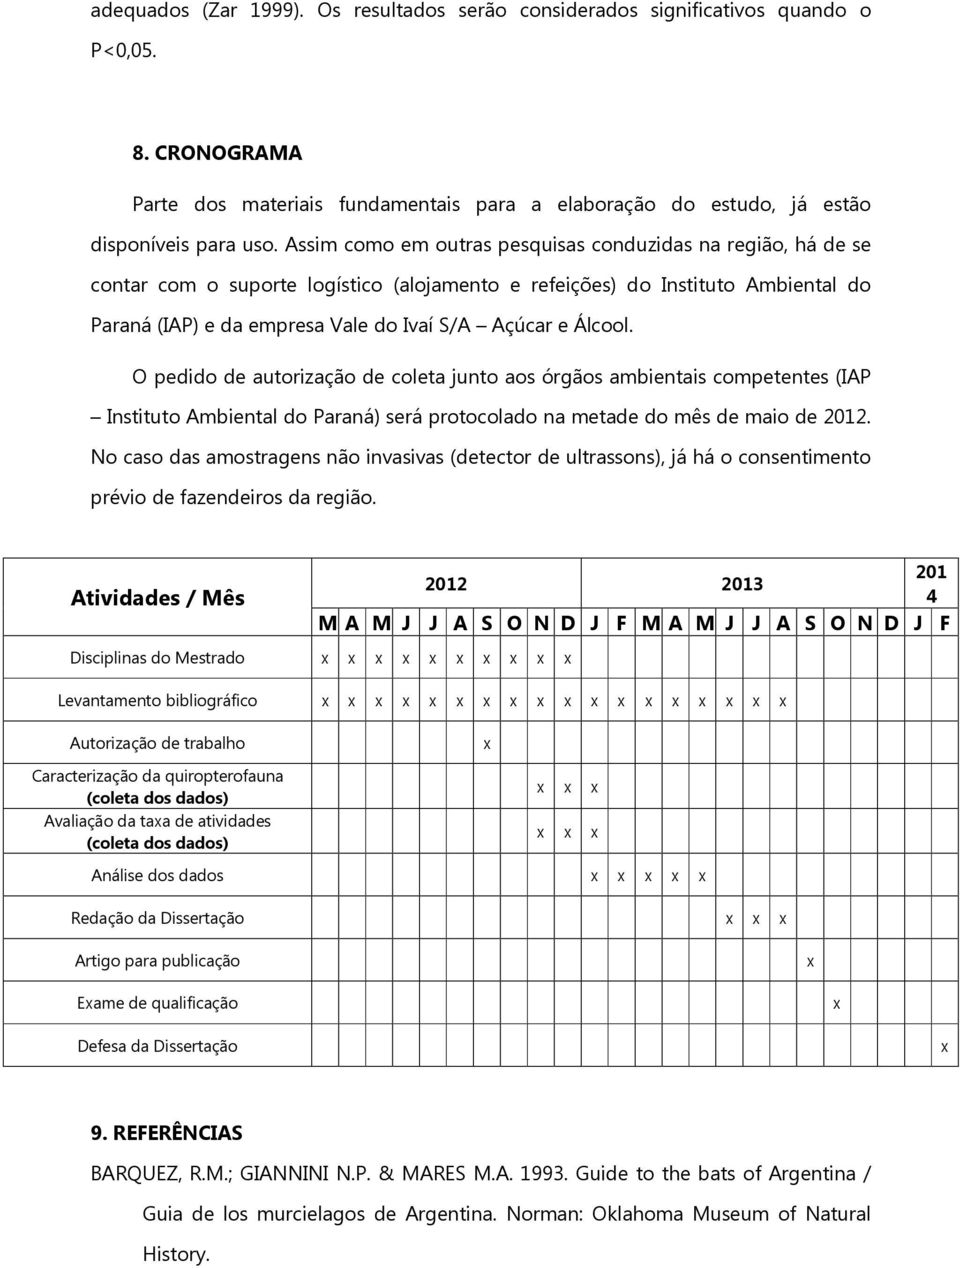 Álcool. O pedido de autorização de coleta junto aos órgãos ambientais competentes (IAP Instituto Ambiental do Paraná) será protocolado na metade do mês de maio de 2012.